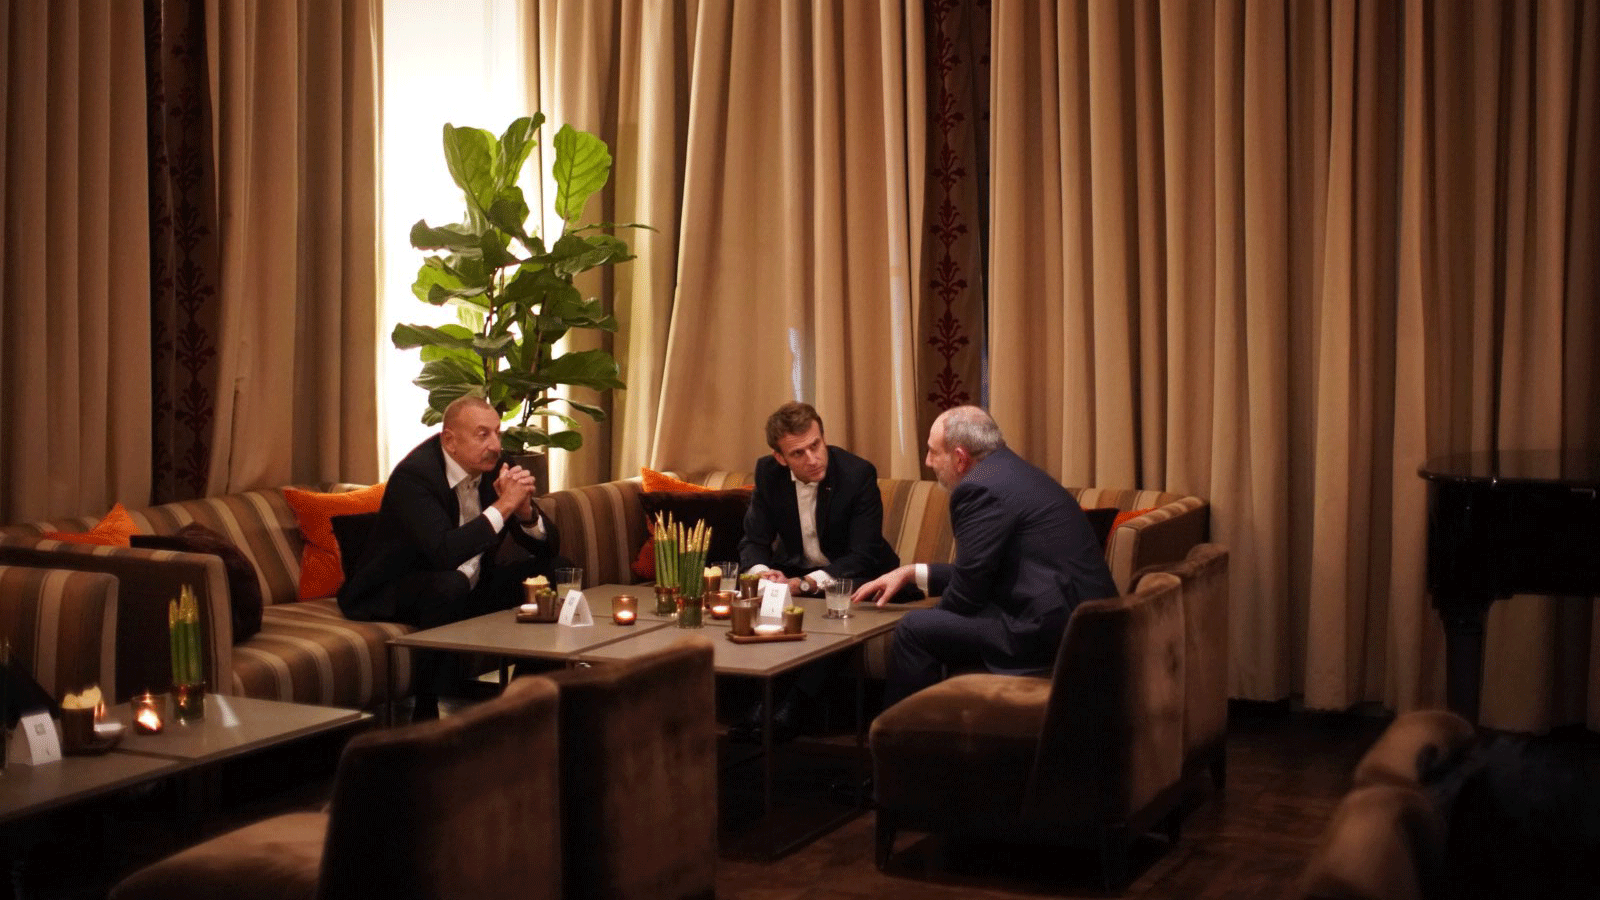 صورة من صفحة الرئيس الفرنسي إيمانويل ماكرون الموثقة على تويتر، وفيها يجتمع مع رئيسي أرمينيا وأذربيجيان